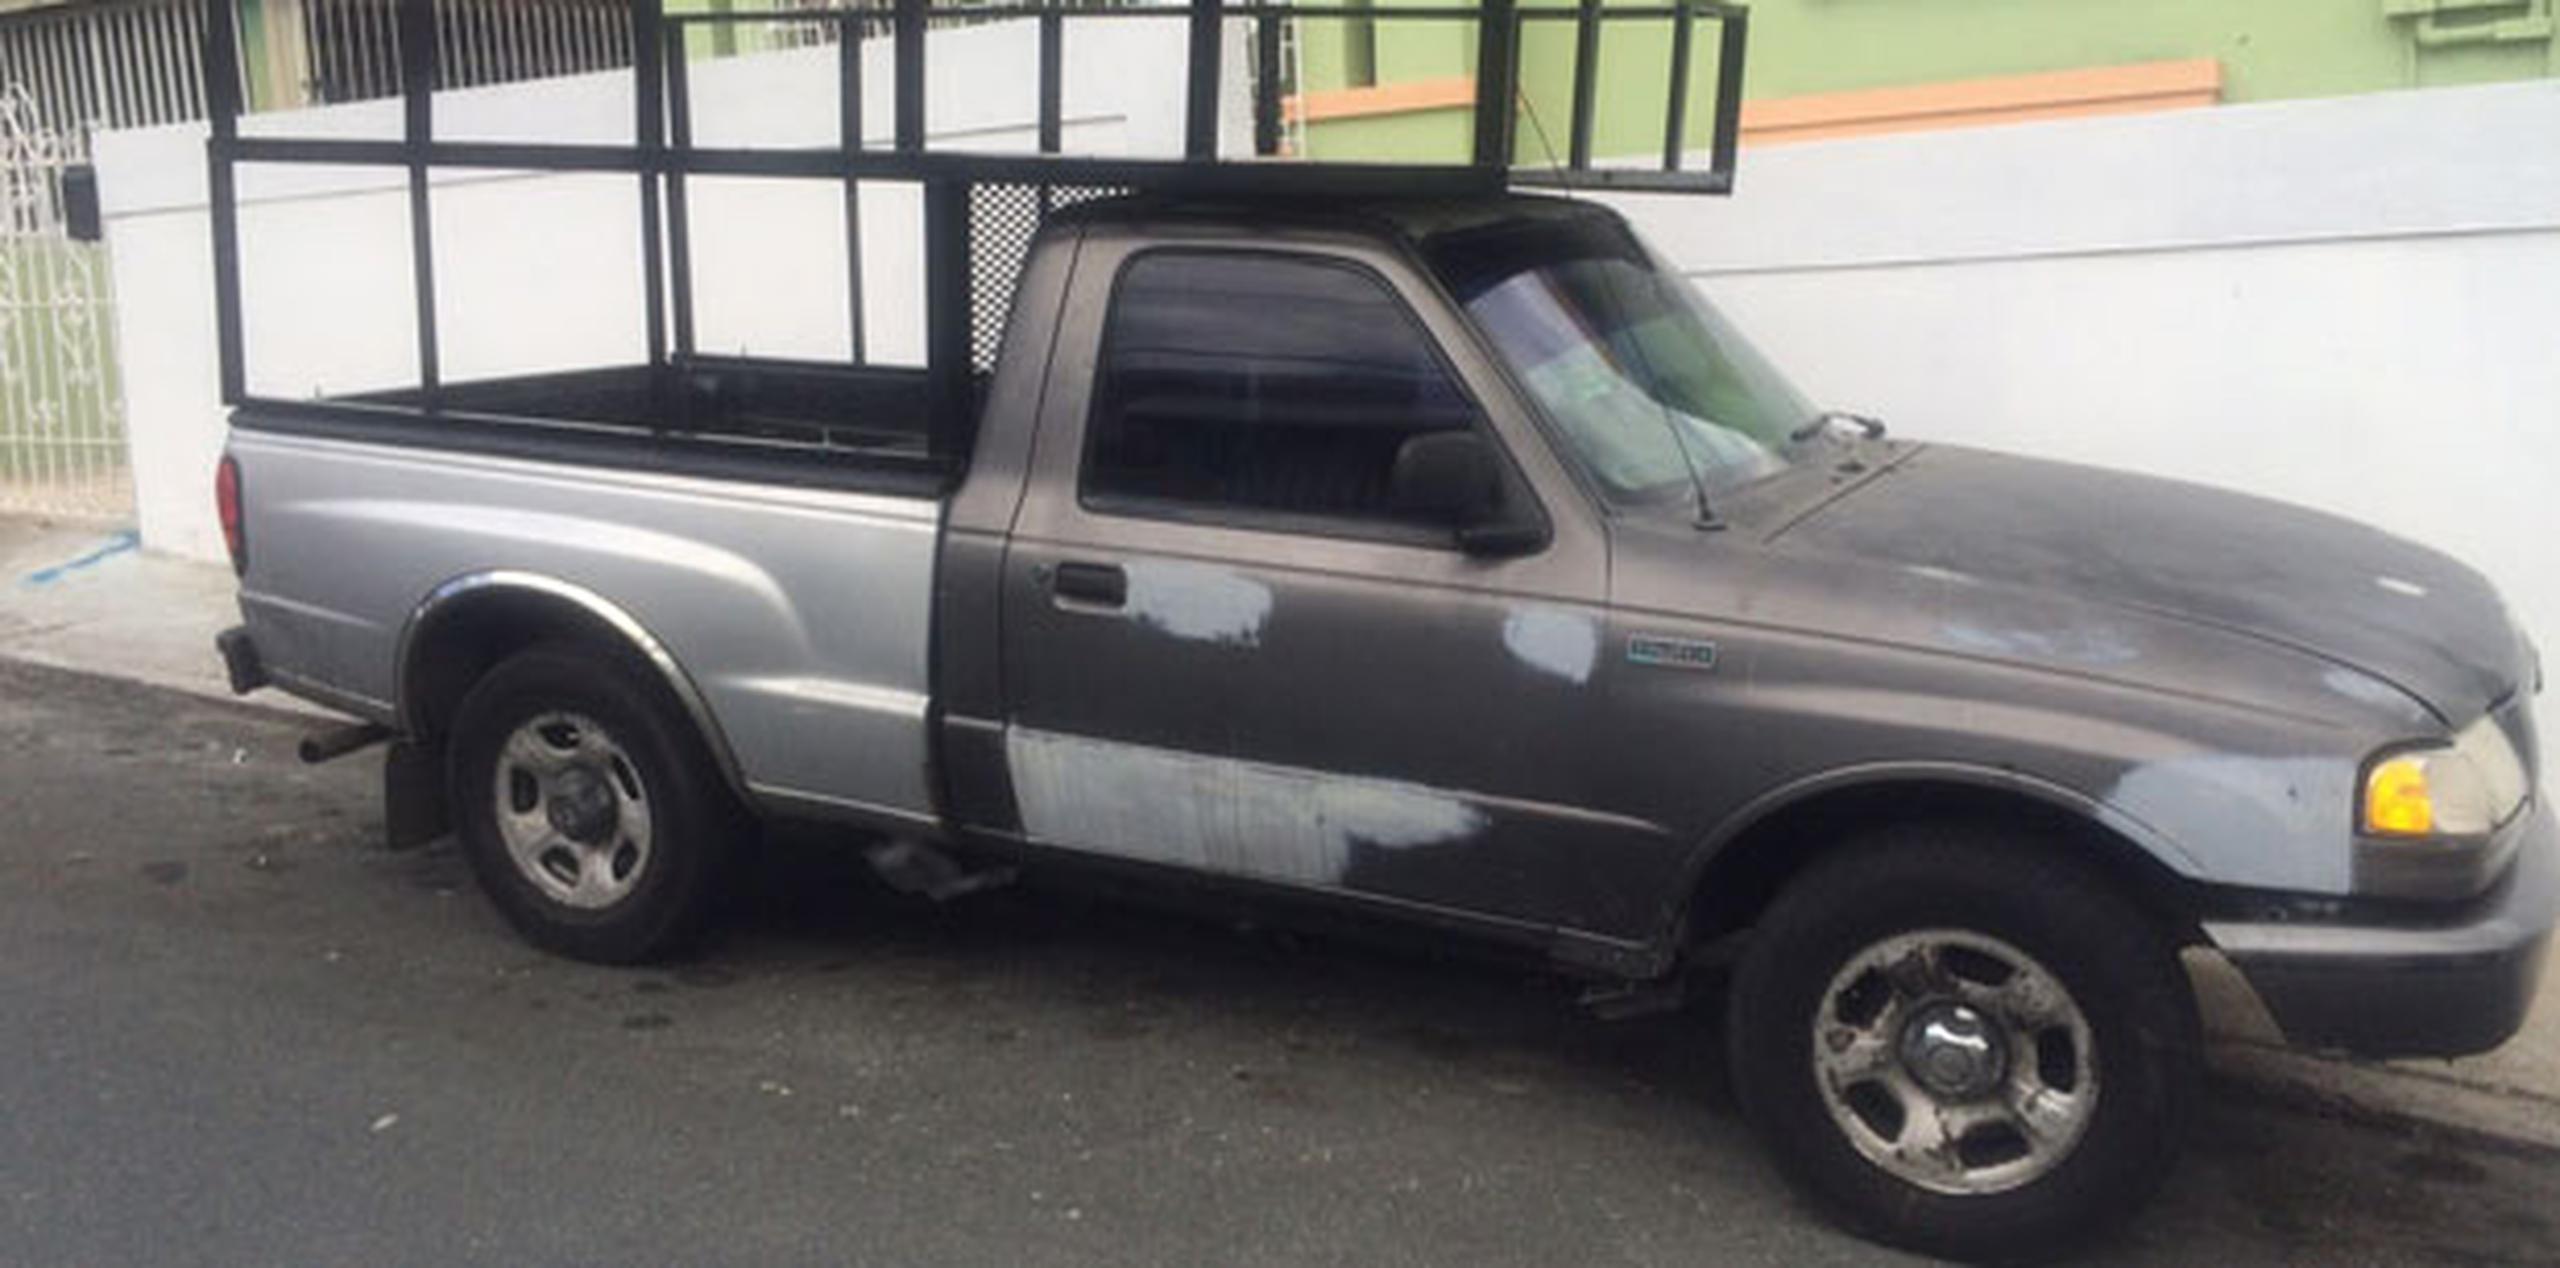 Según datos preliminares, el hombre fue encontrado ahorcado en la parte posterior de una camioneta Mazda B-2500. (Suministrada)